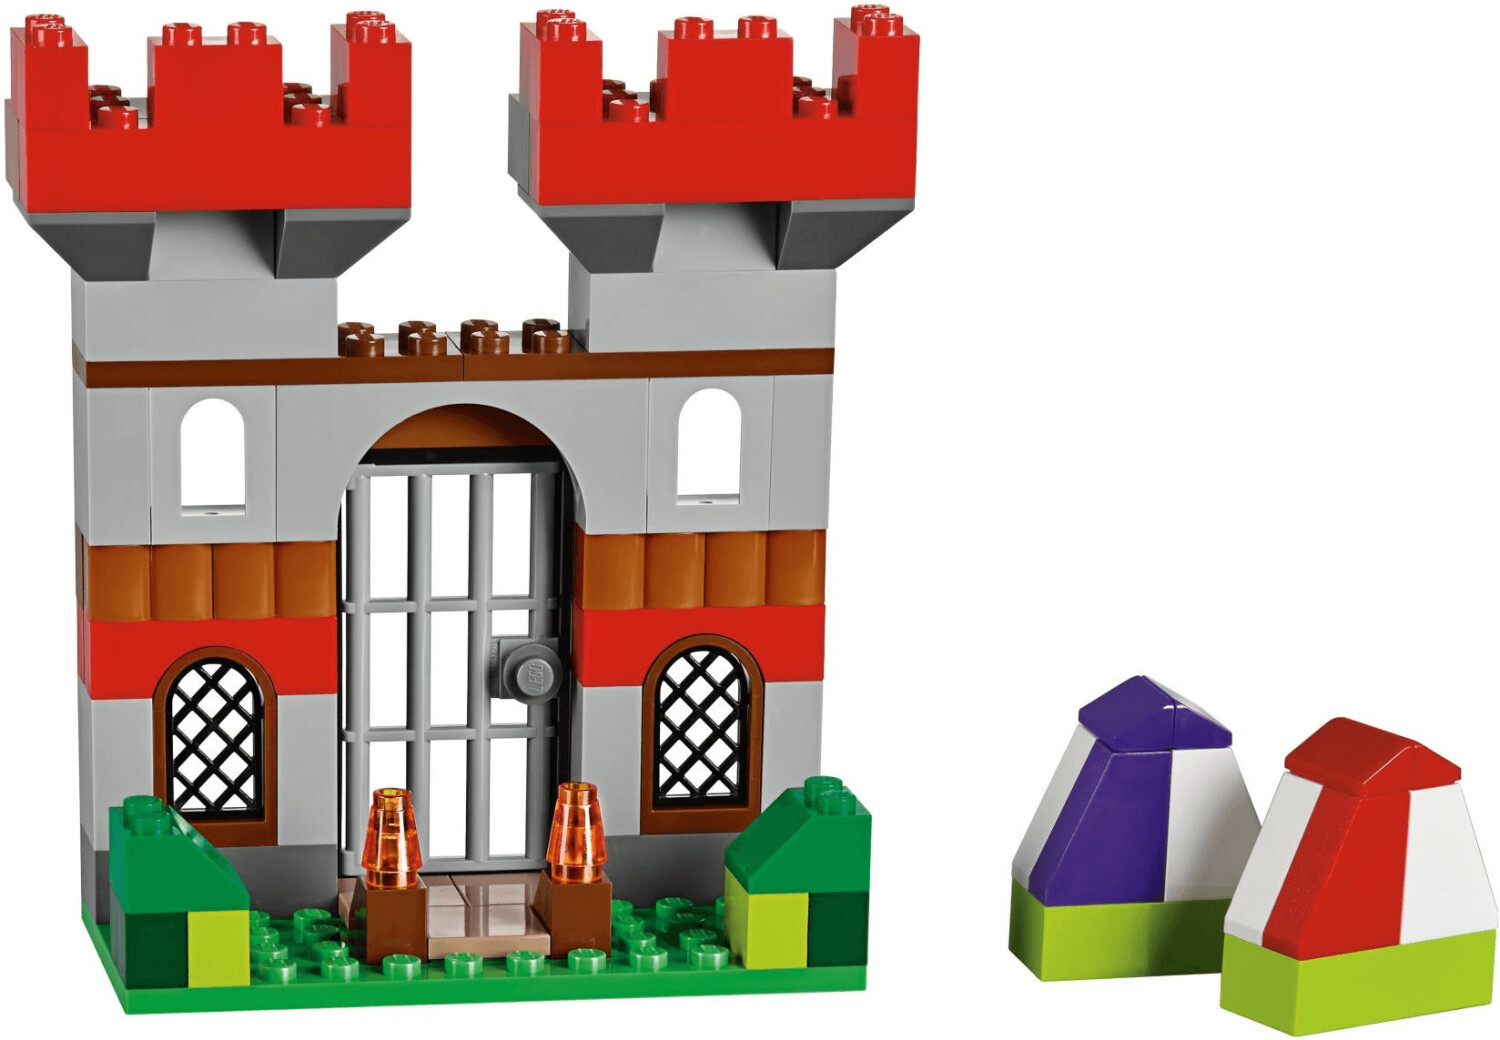 LEGO Classic 10698 - Boîte de Briques Créatives Deluxe